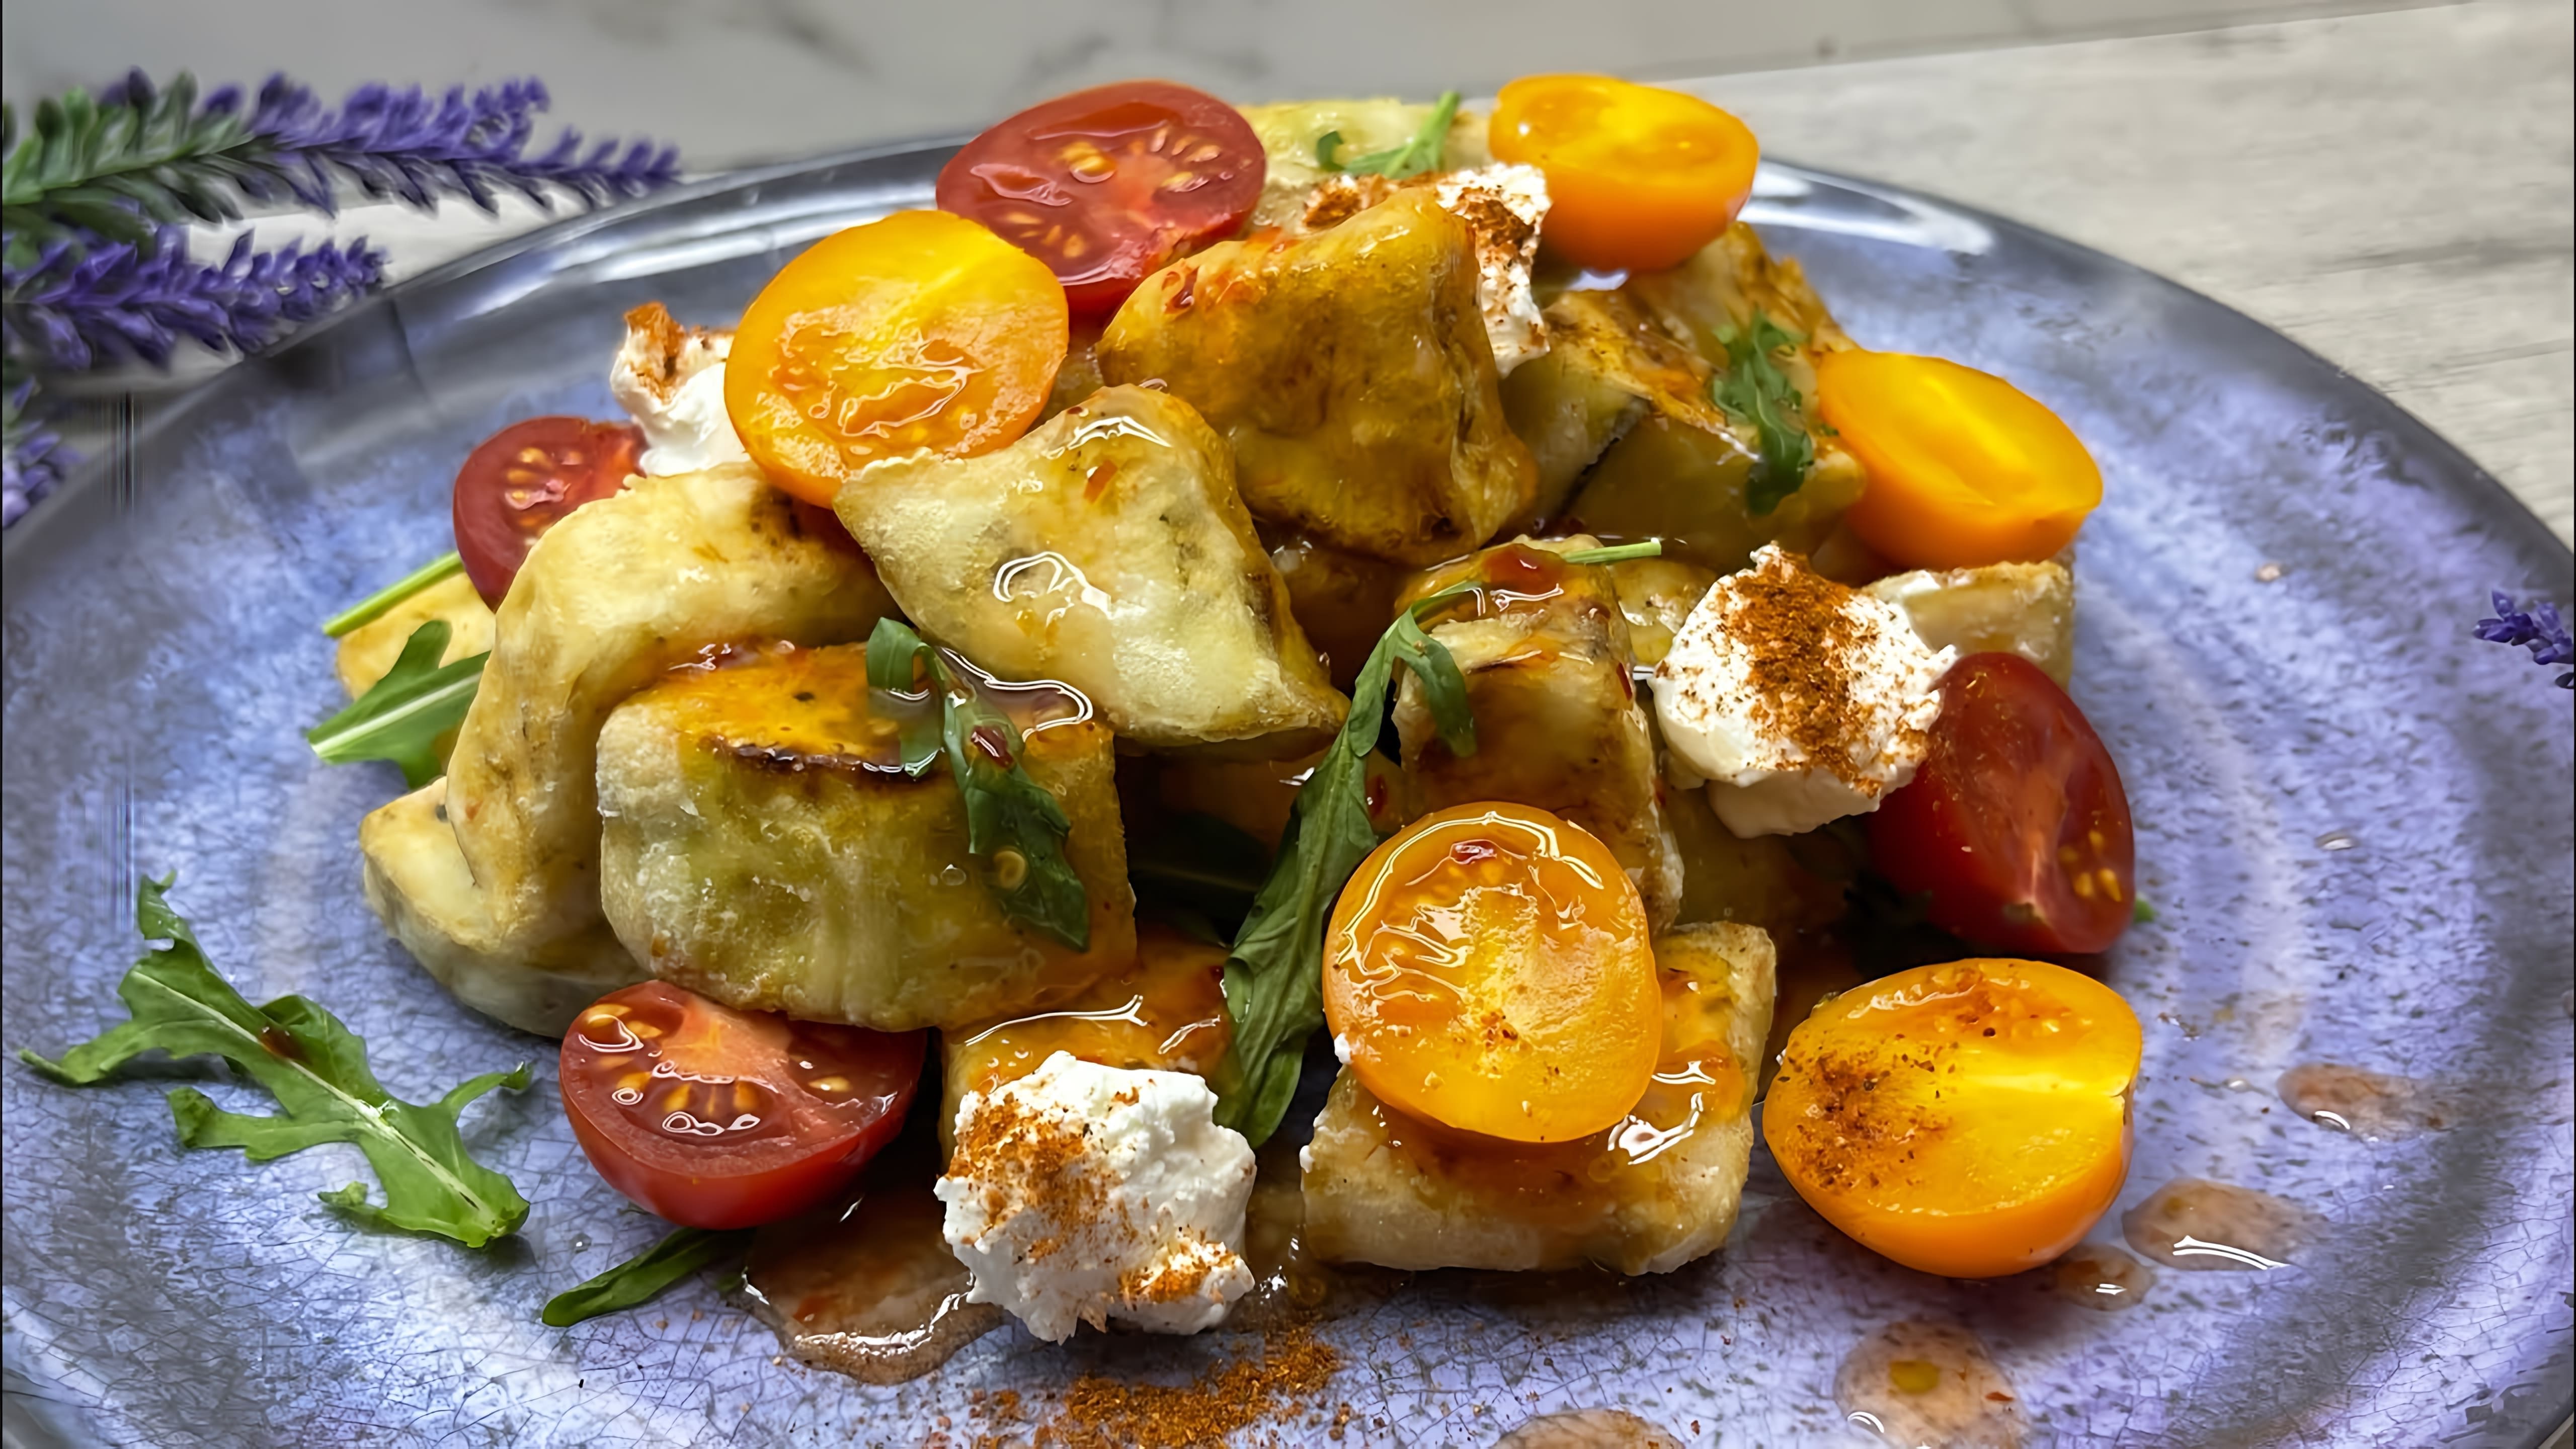 Салат "Хрустящие баклажаны" - это вкусное и оригинальное блюдо, которое можно приготовить в домашних условиях